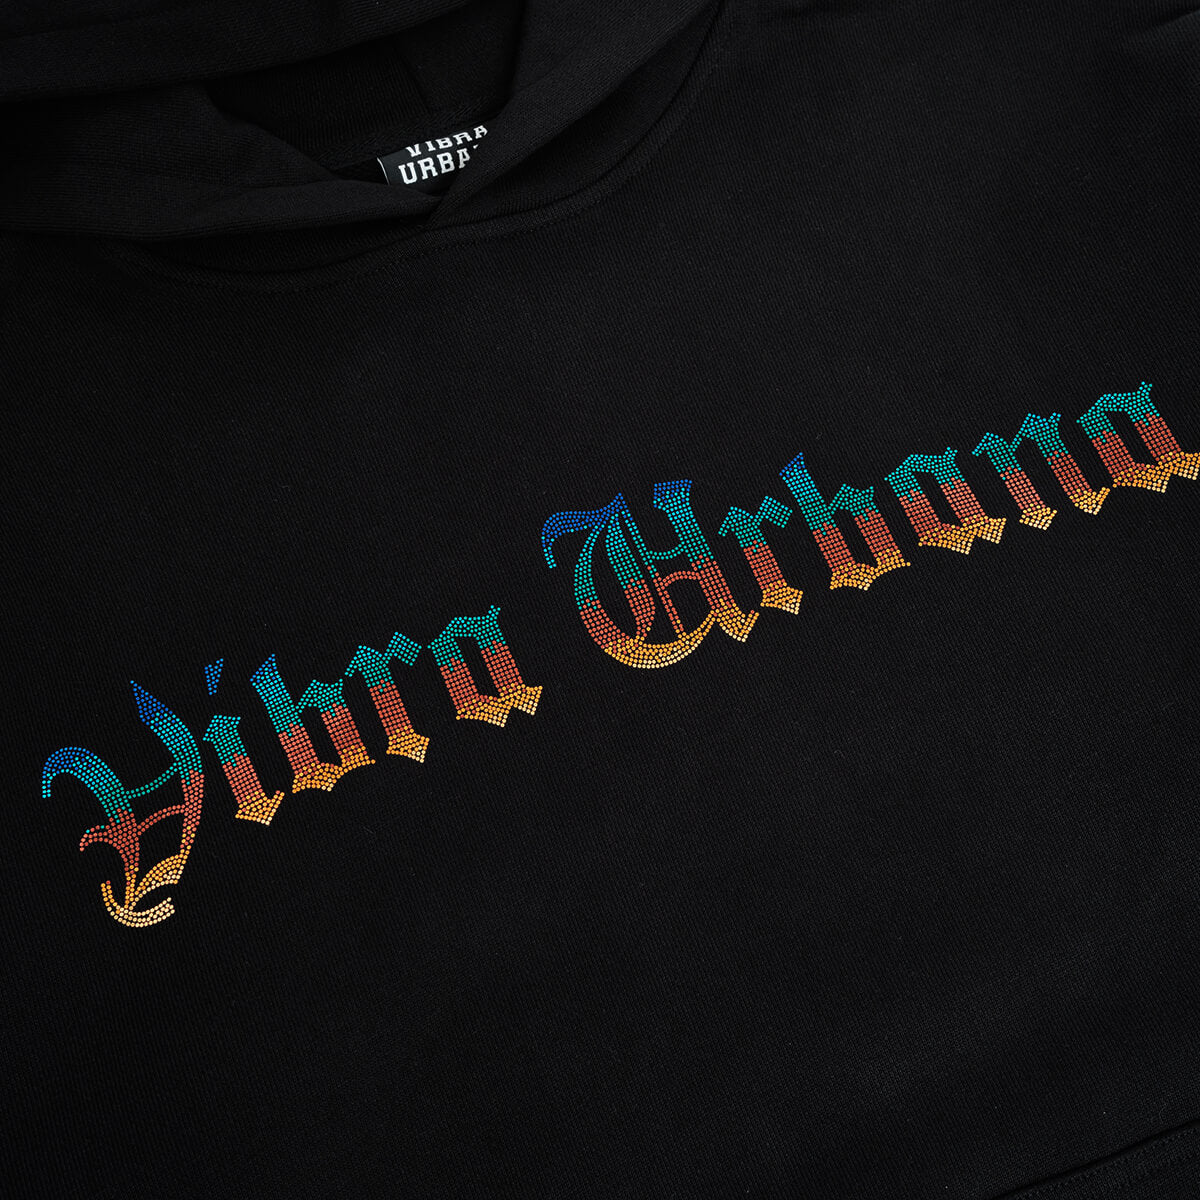 Vibra Urbana OE Metallic Hooded Sweatshirt